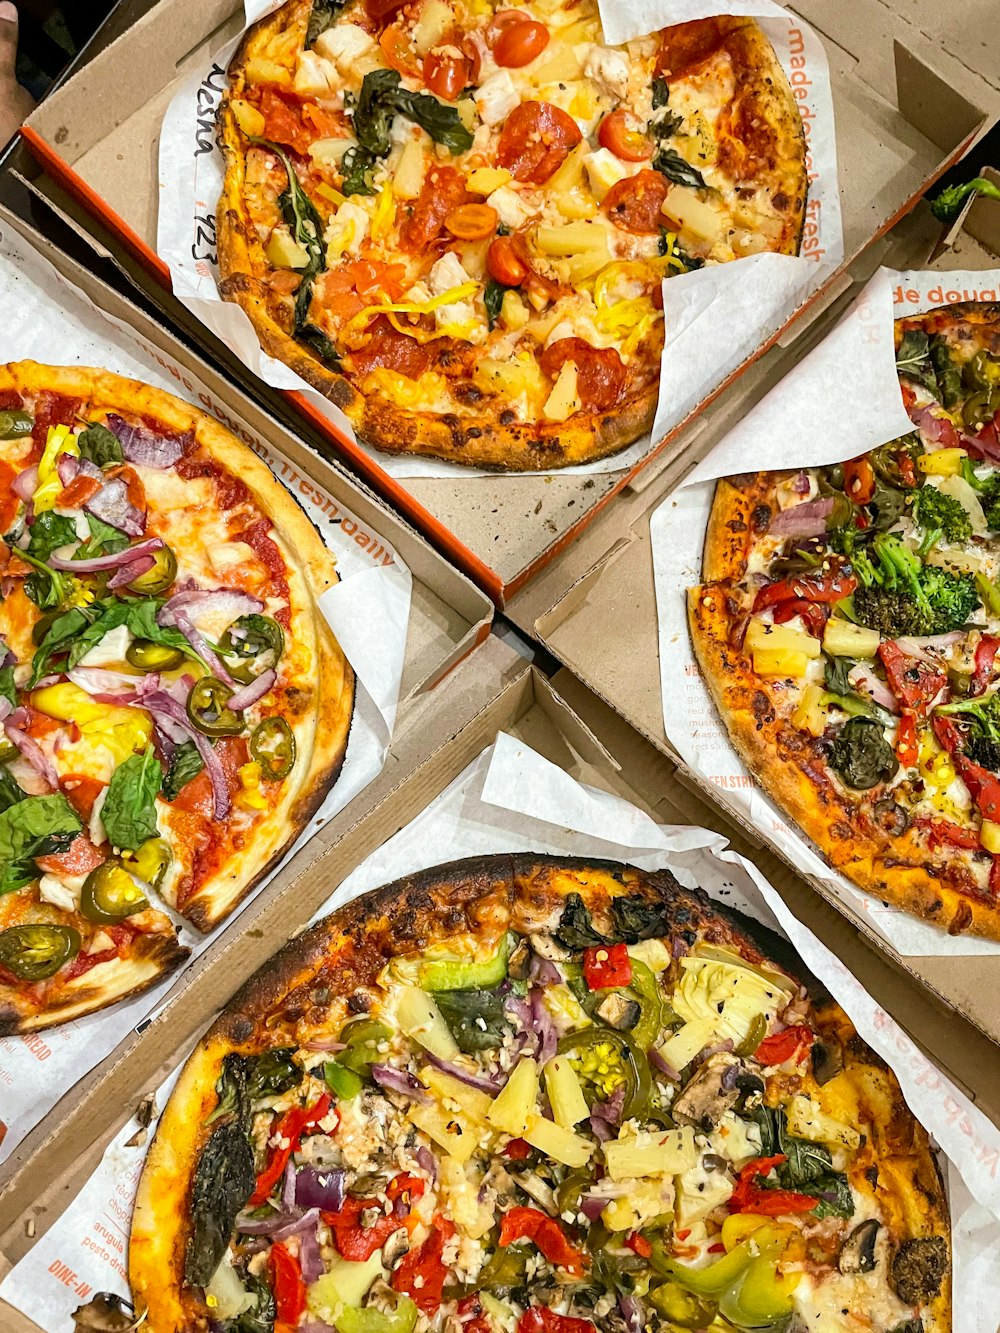 Cuatro pizzas con diferentes ingredientes en una caja